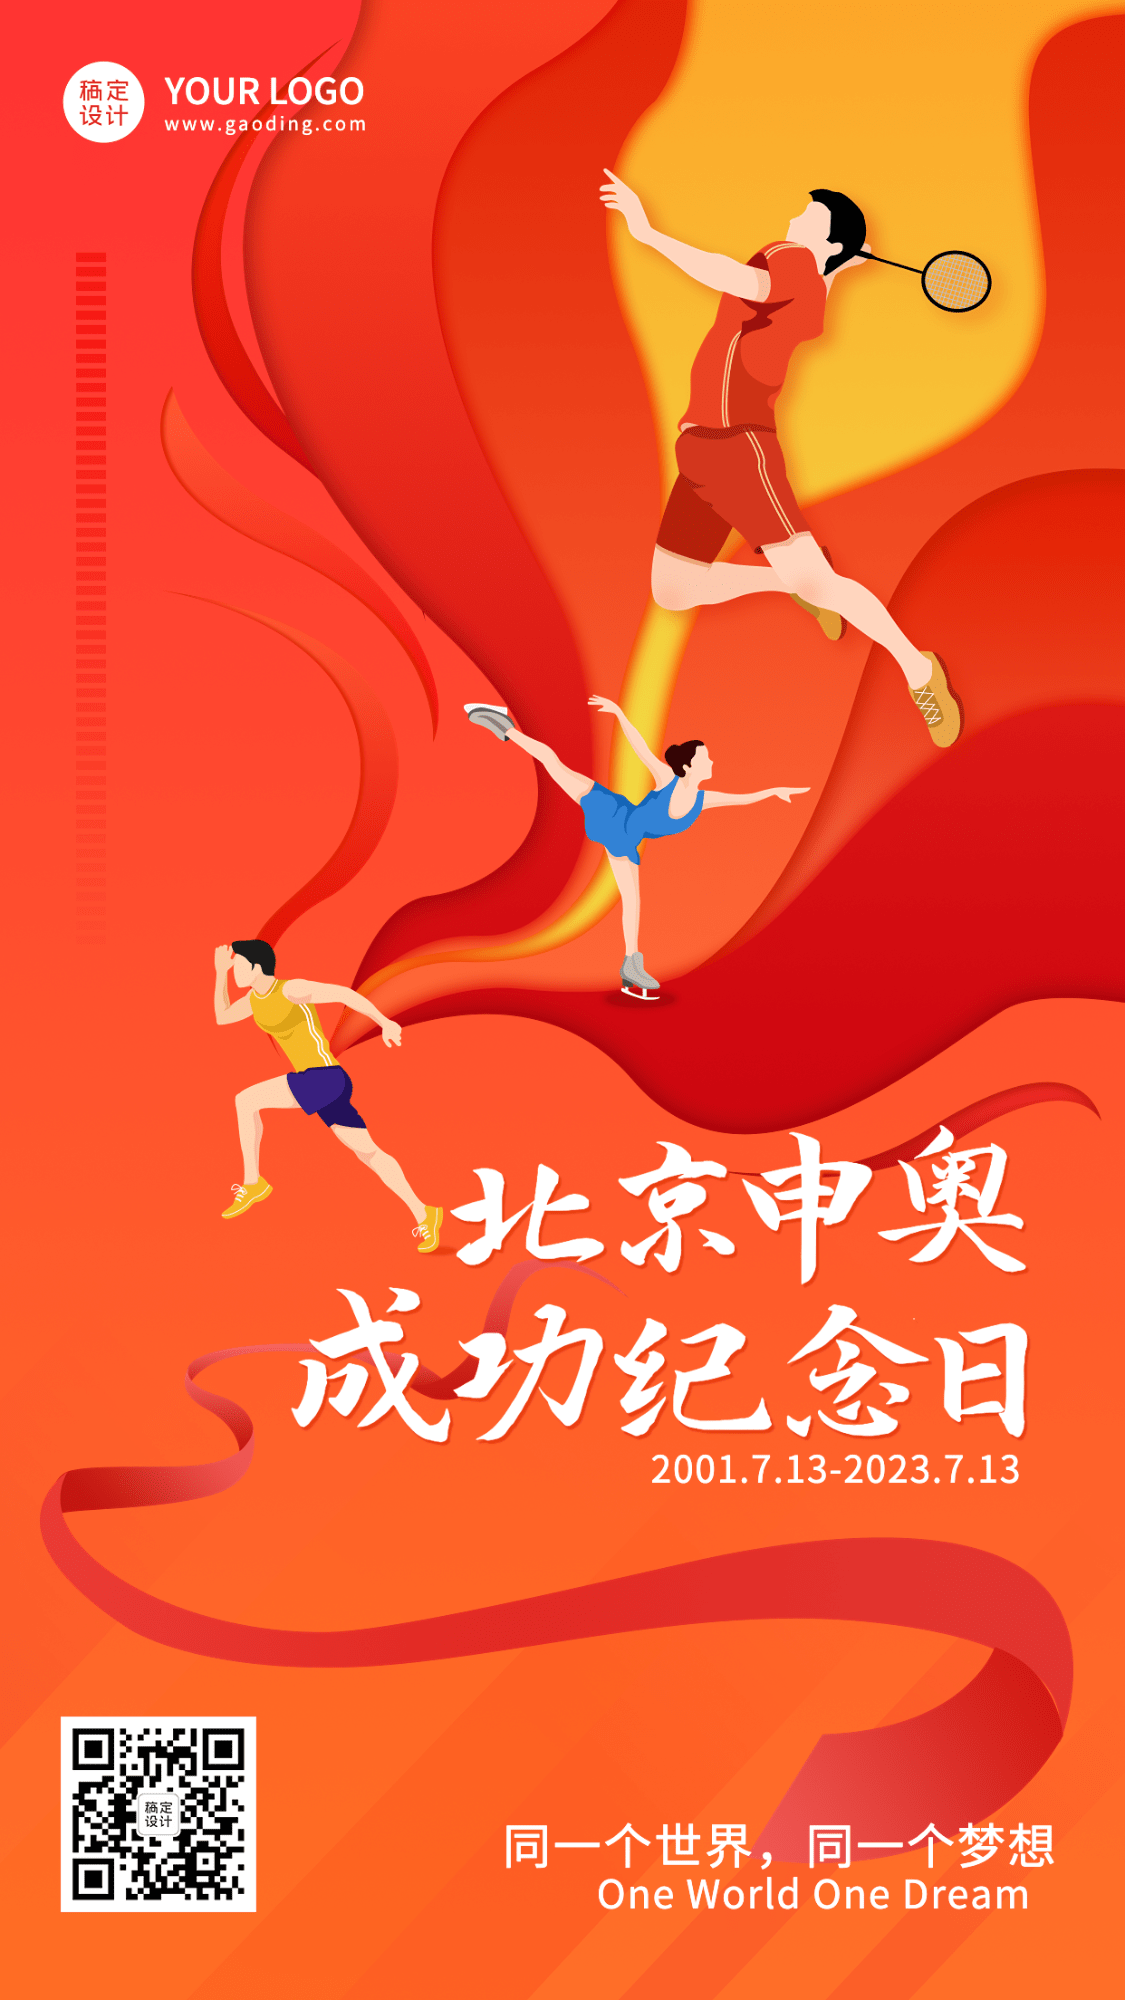 北京申奥成功纪念日节日宣传插画手机海报